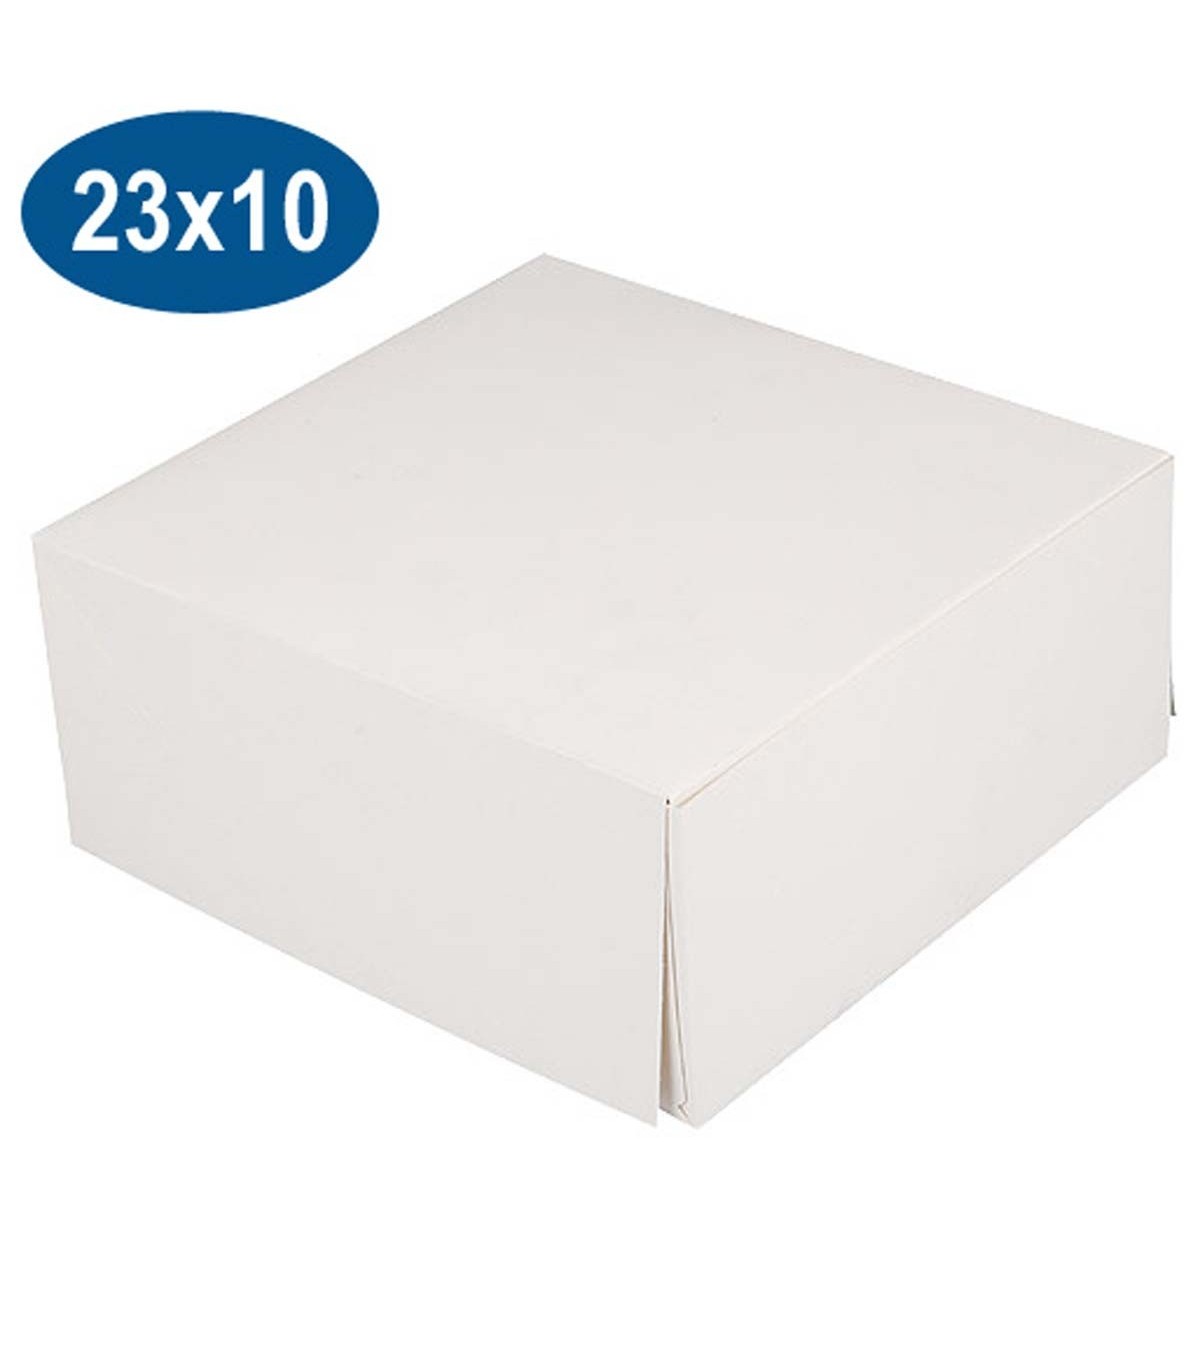 Tomar represalias piel café Caja cartón cuadrada blanca con tapa separada 23 x 23 x 10 cm